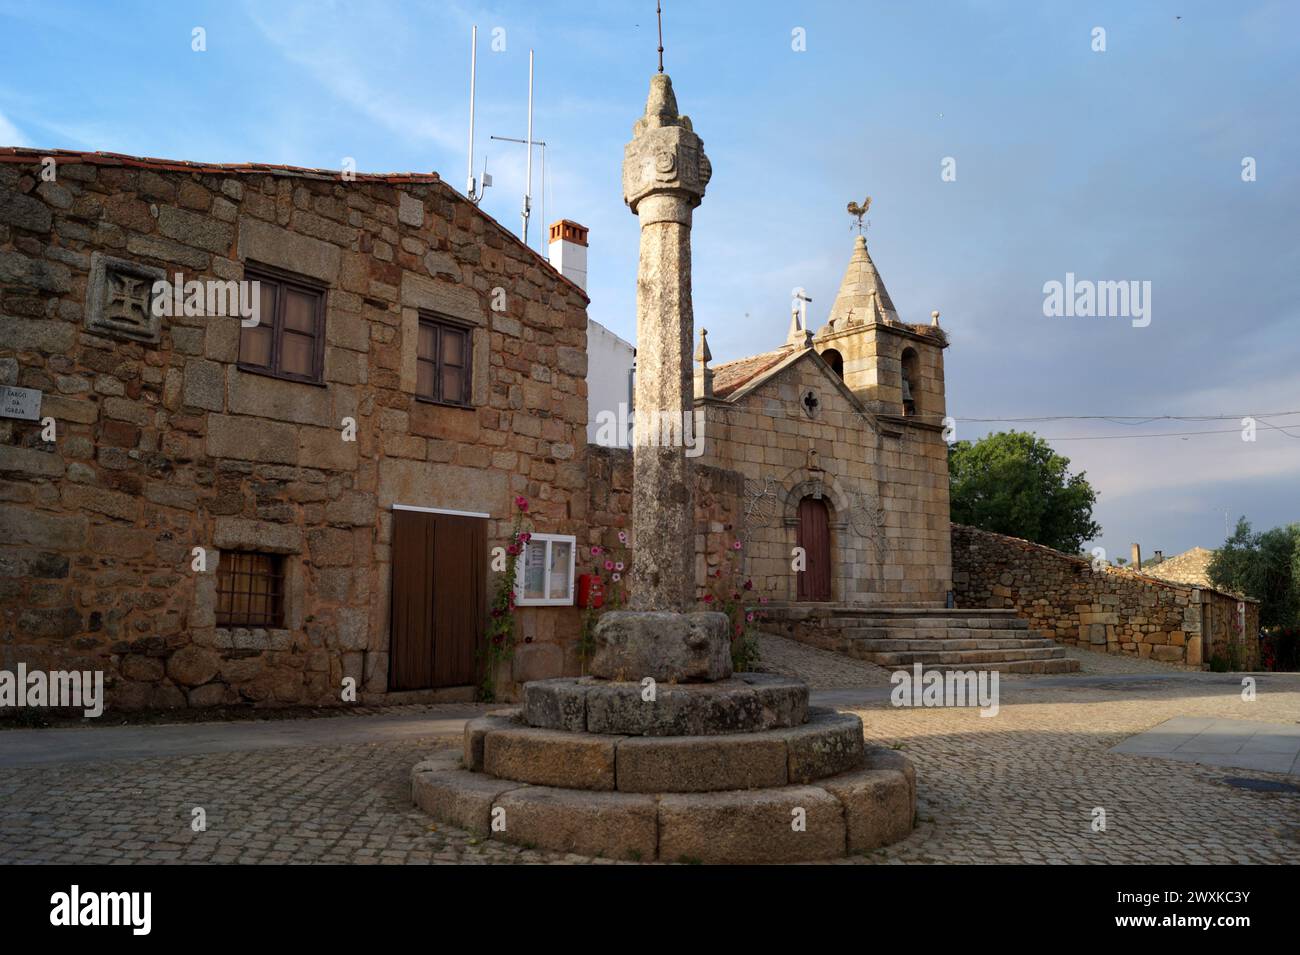 Gole di pietra del XVII secolo nella piazza acciottolata, Idanha-a-Velha, Portogallo Foto Stock